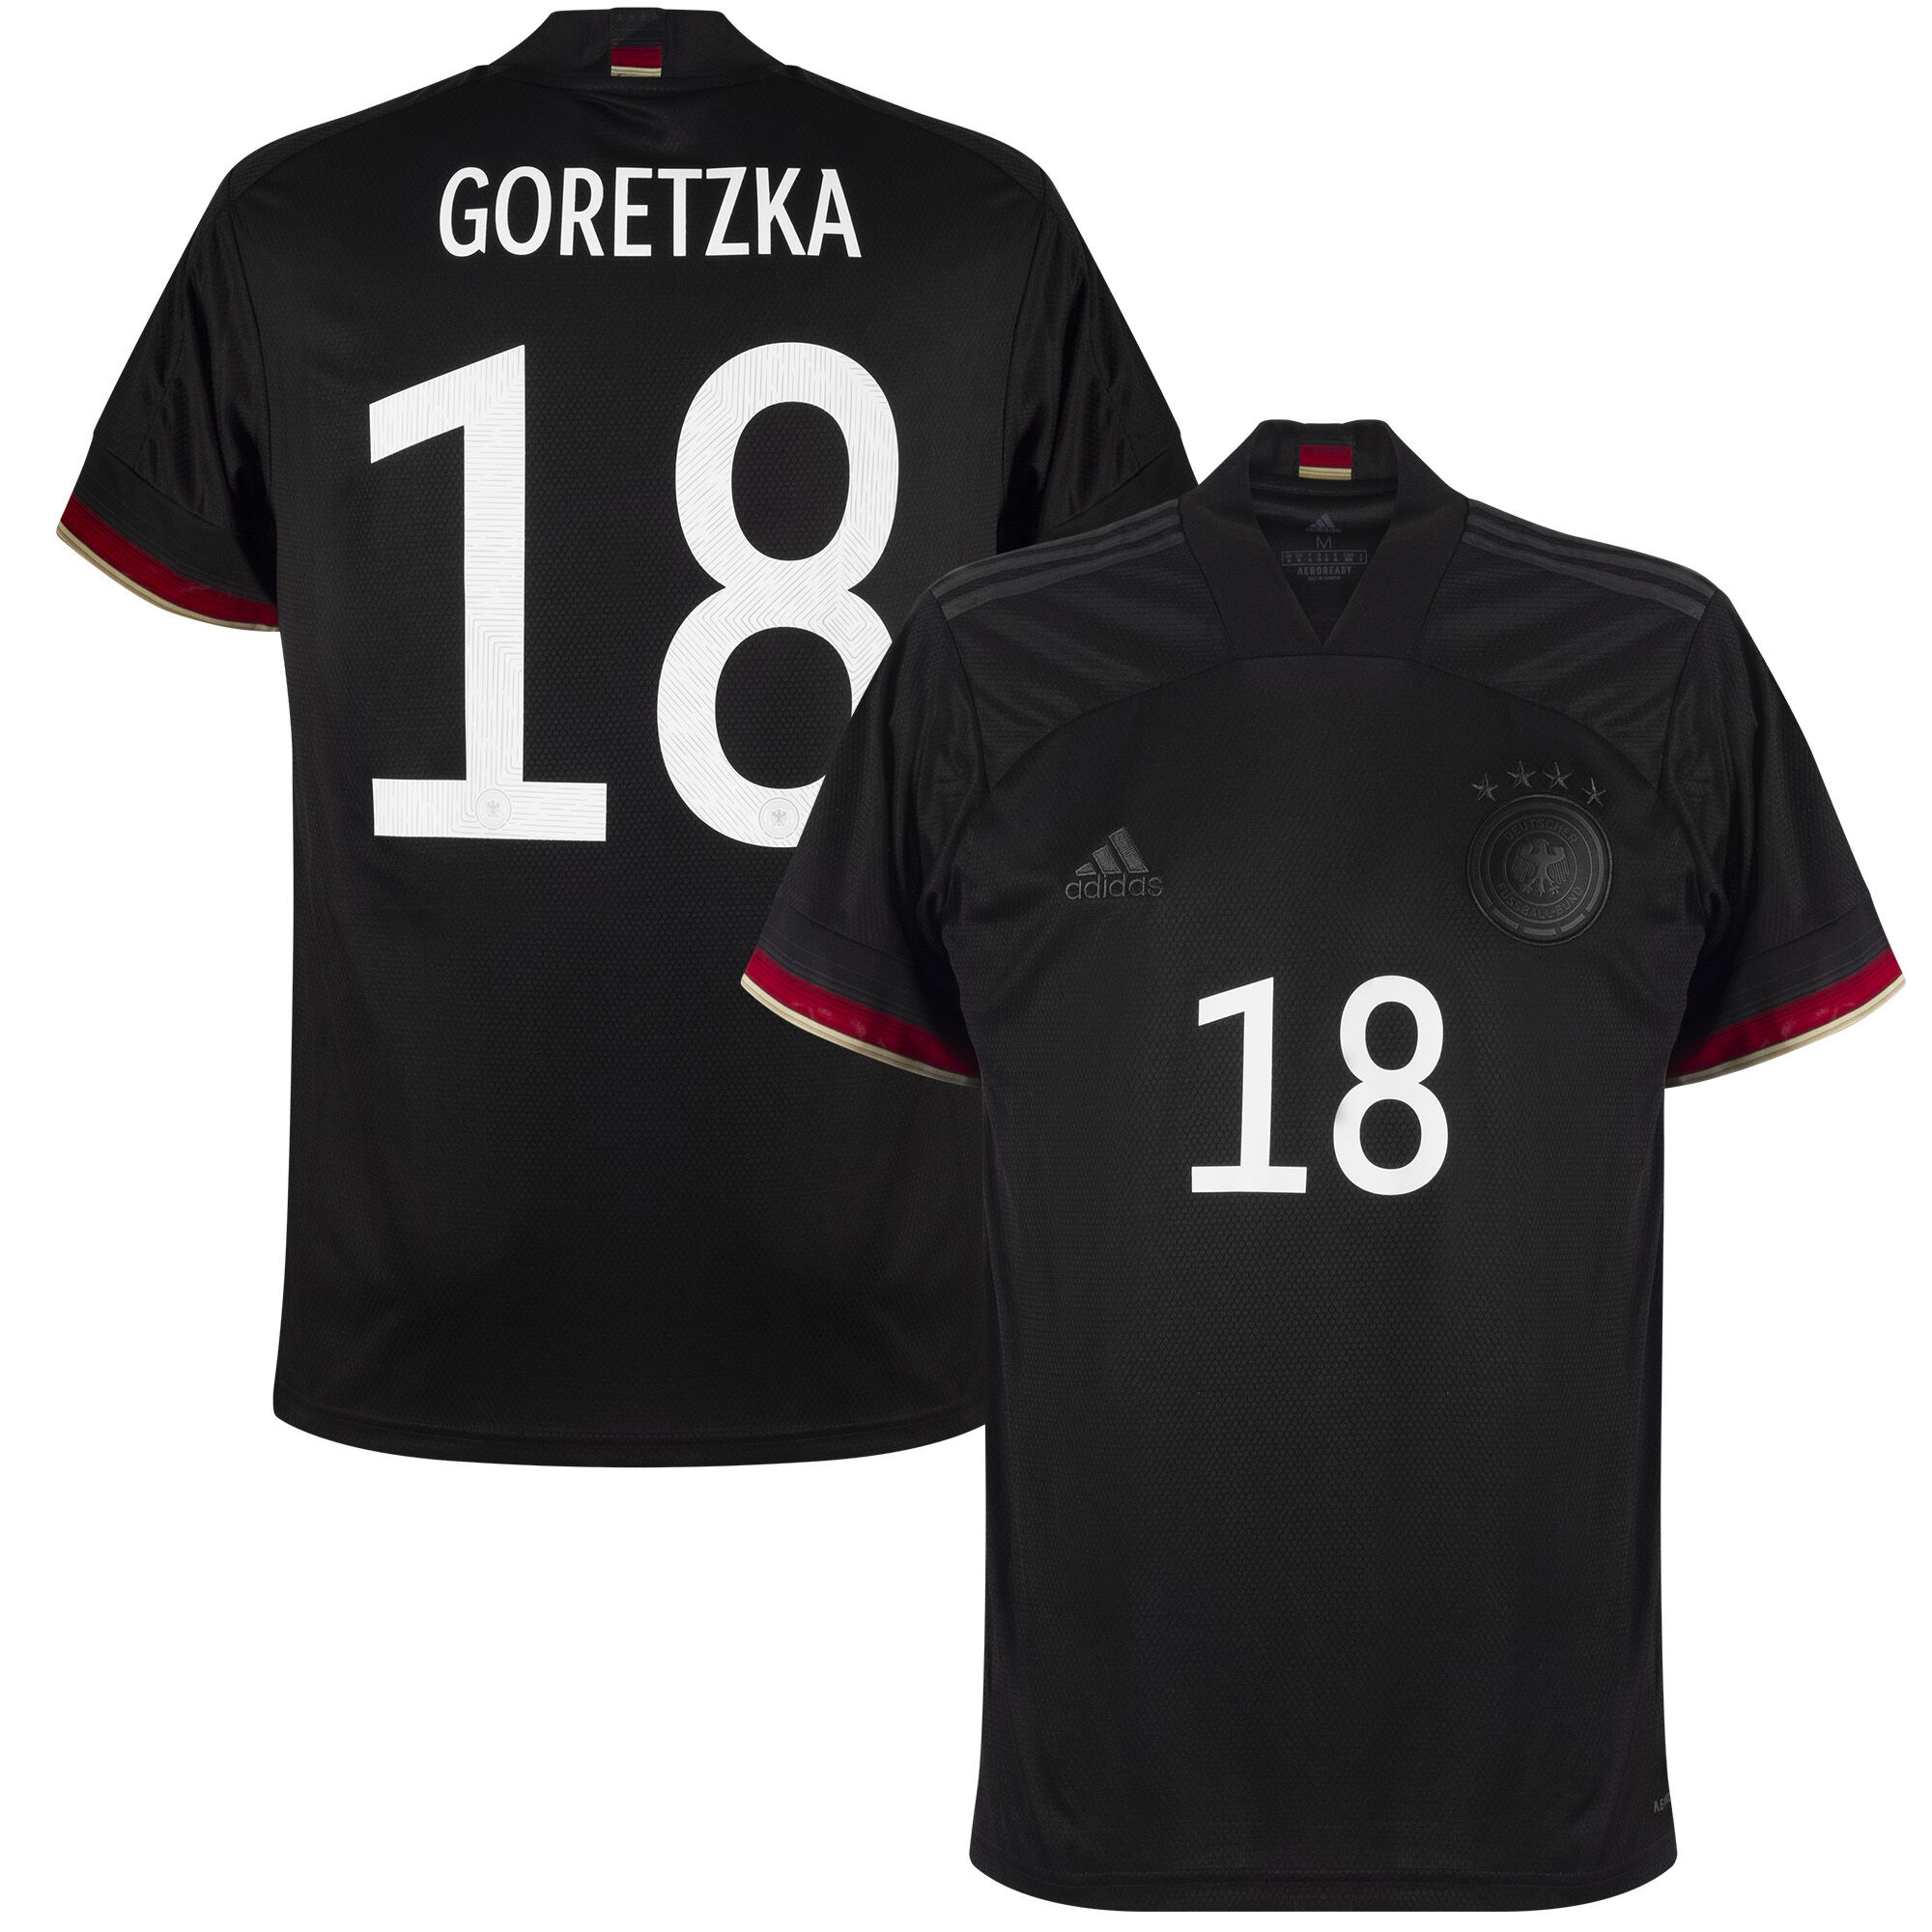 Německo - Dres fotbalový - sezóna 2021/22, číslo 18, černý, Leon Goretzka, venkovní